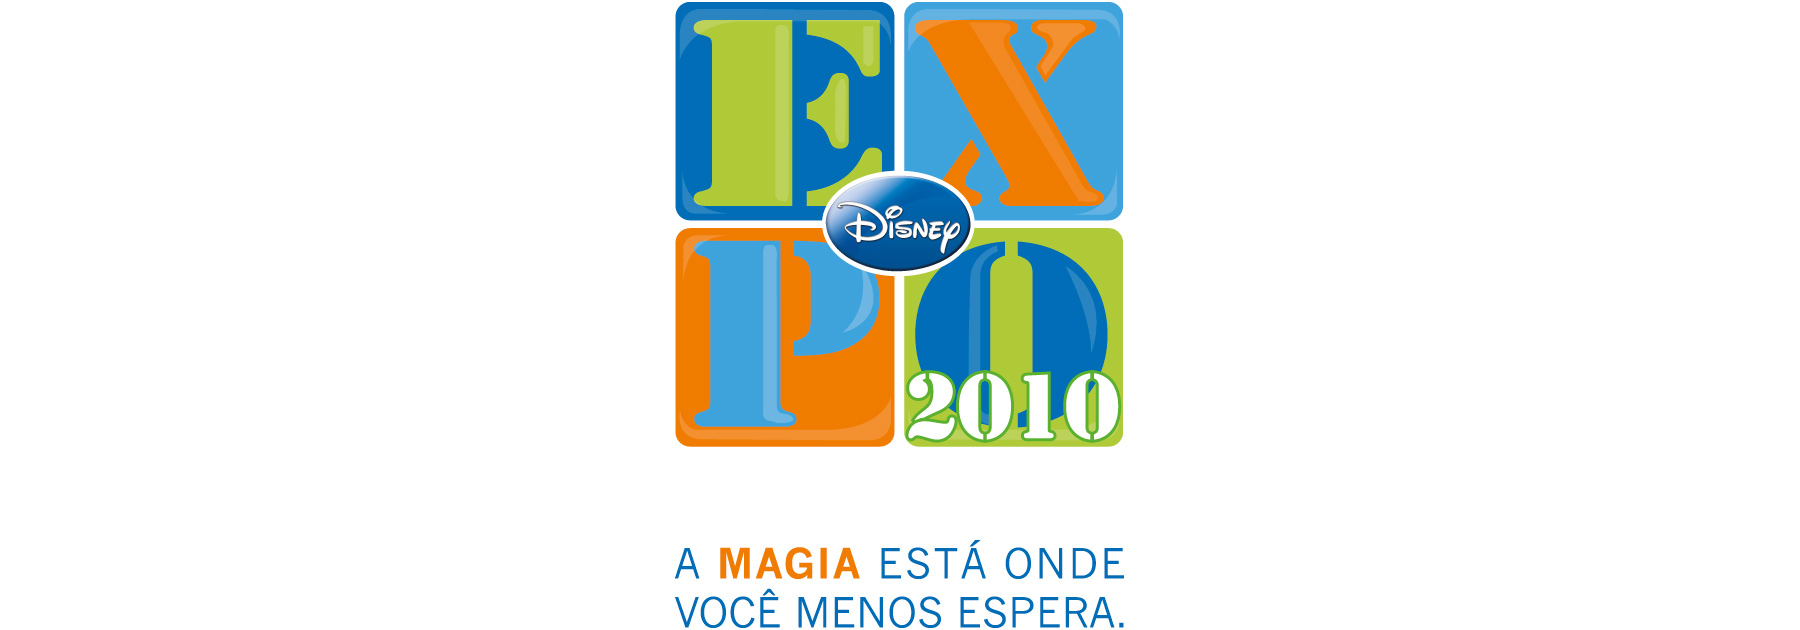 Disney_EXPO_slogan_02